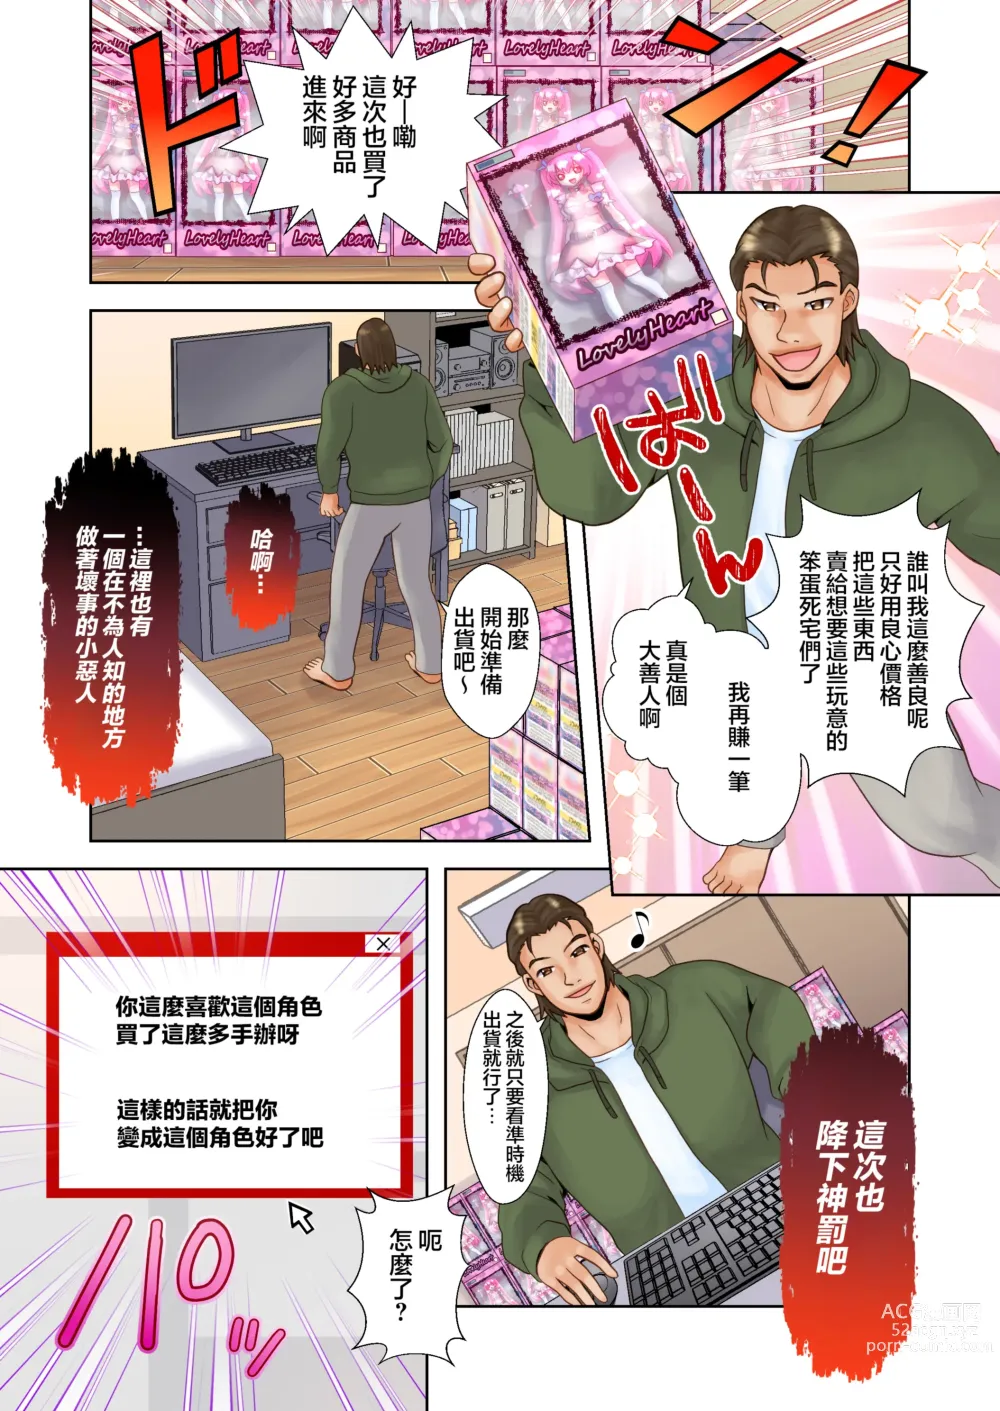 Page 3 of doujinshi Trance Hacking M